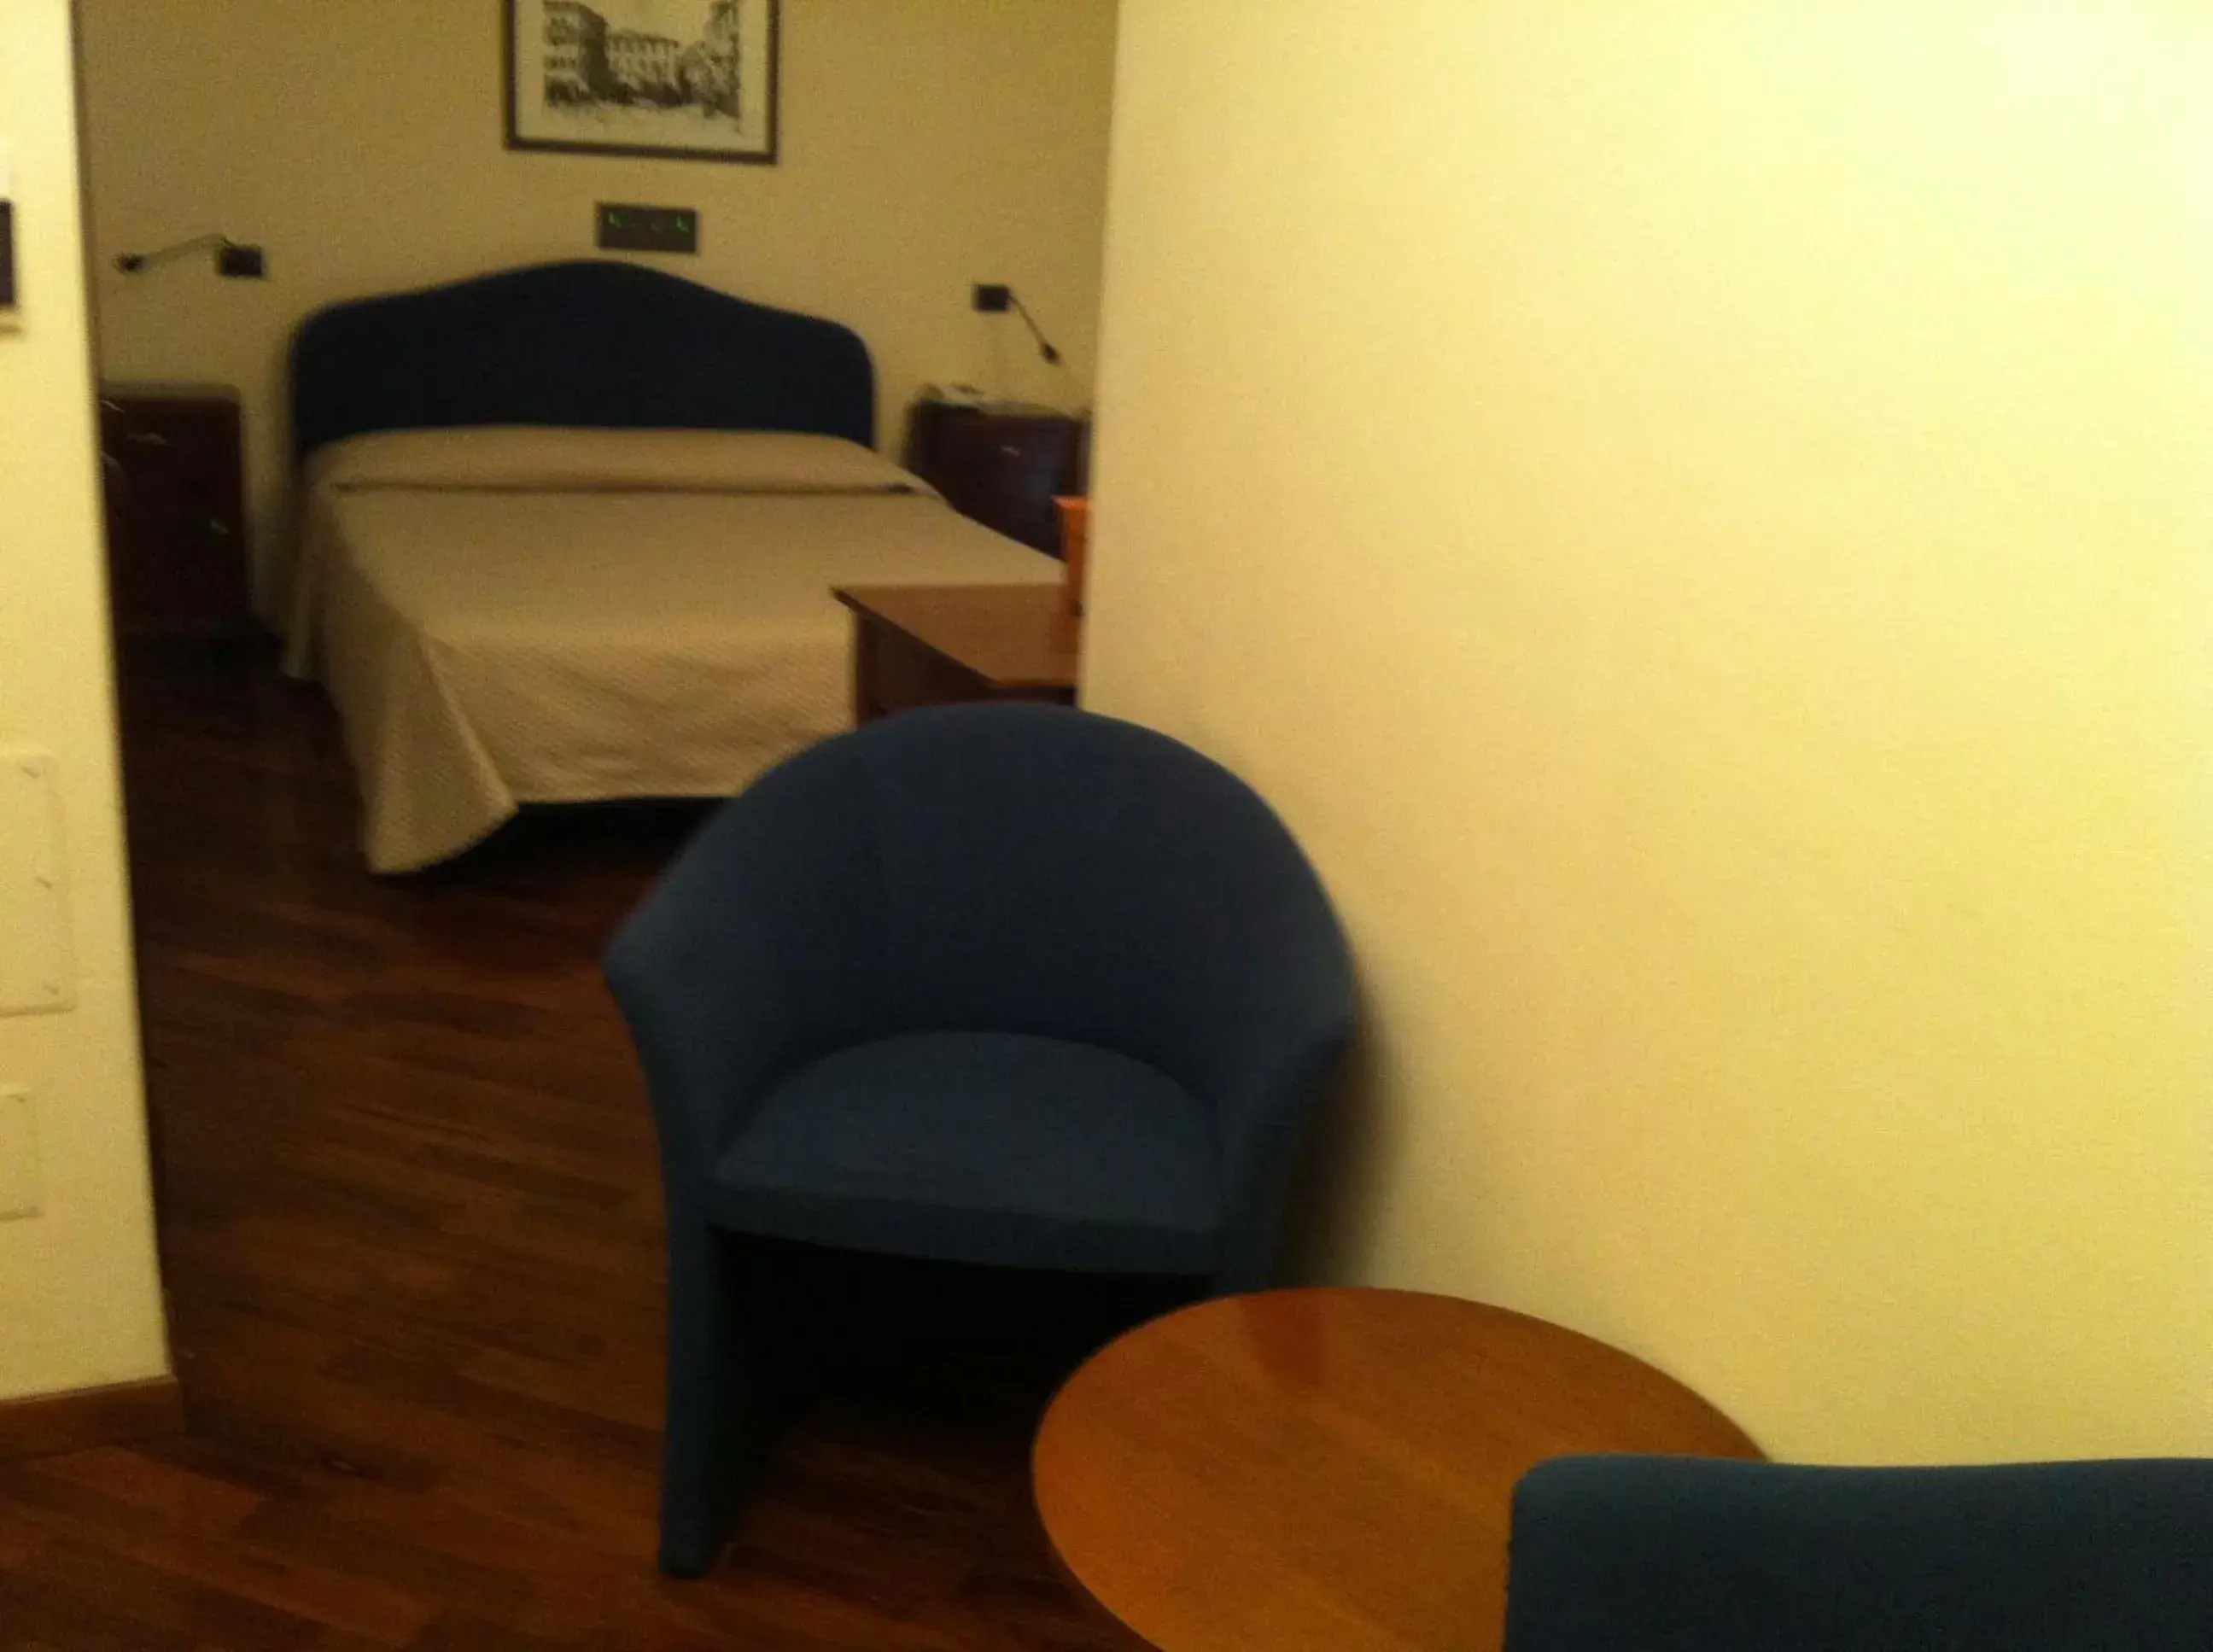 Bed in Hotel il Cigno